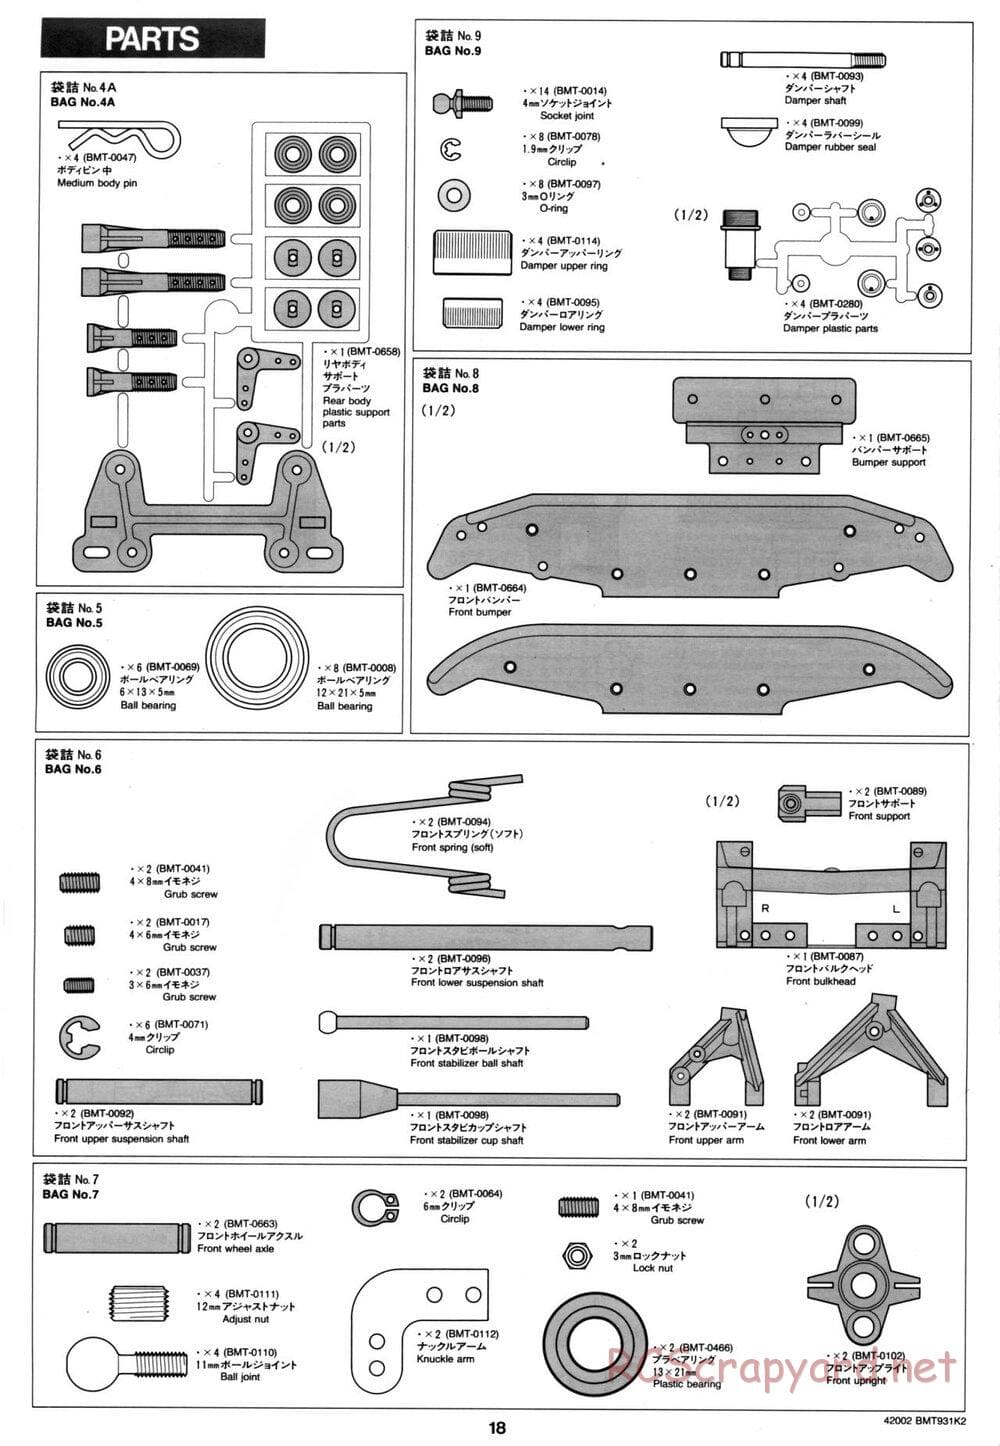 Tamiya - BMT 931 K2 Racing Chassis - Manual - Page 18